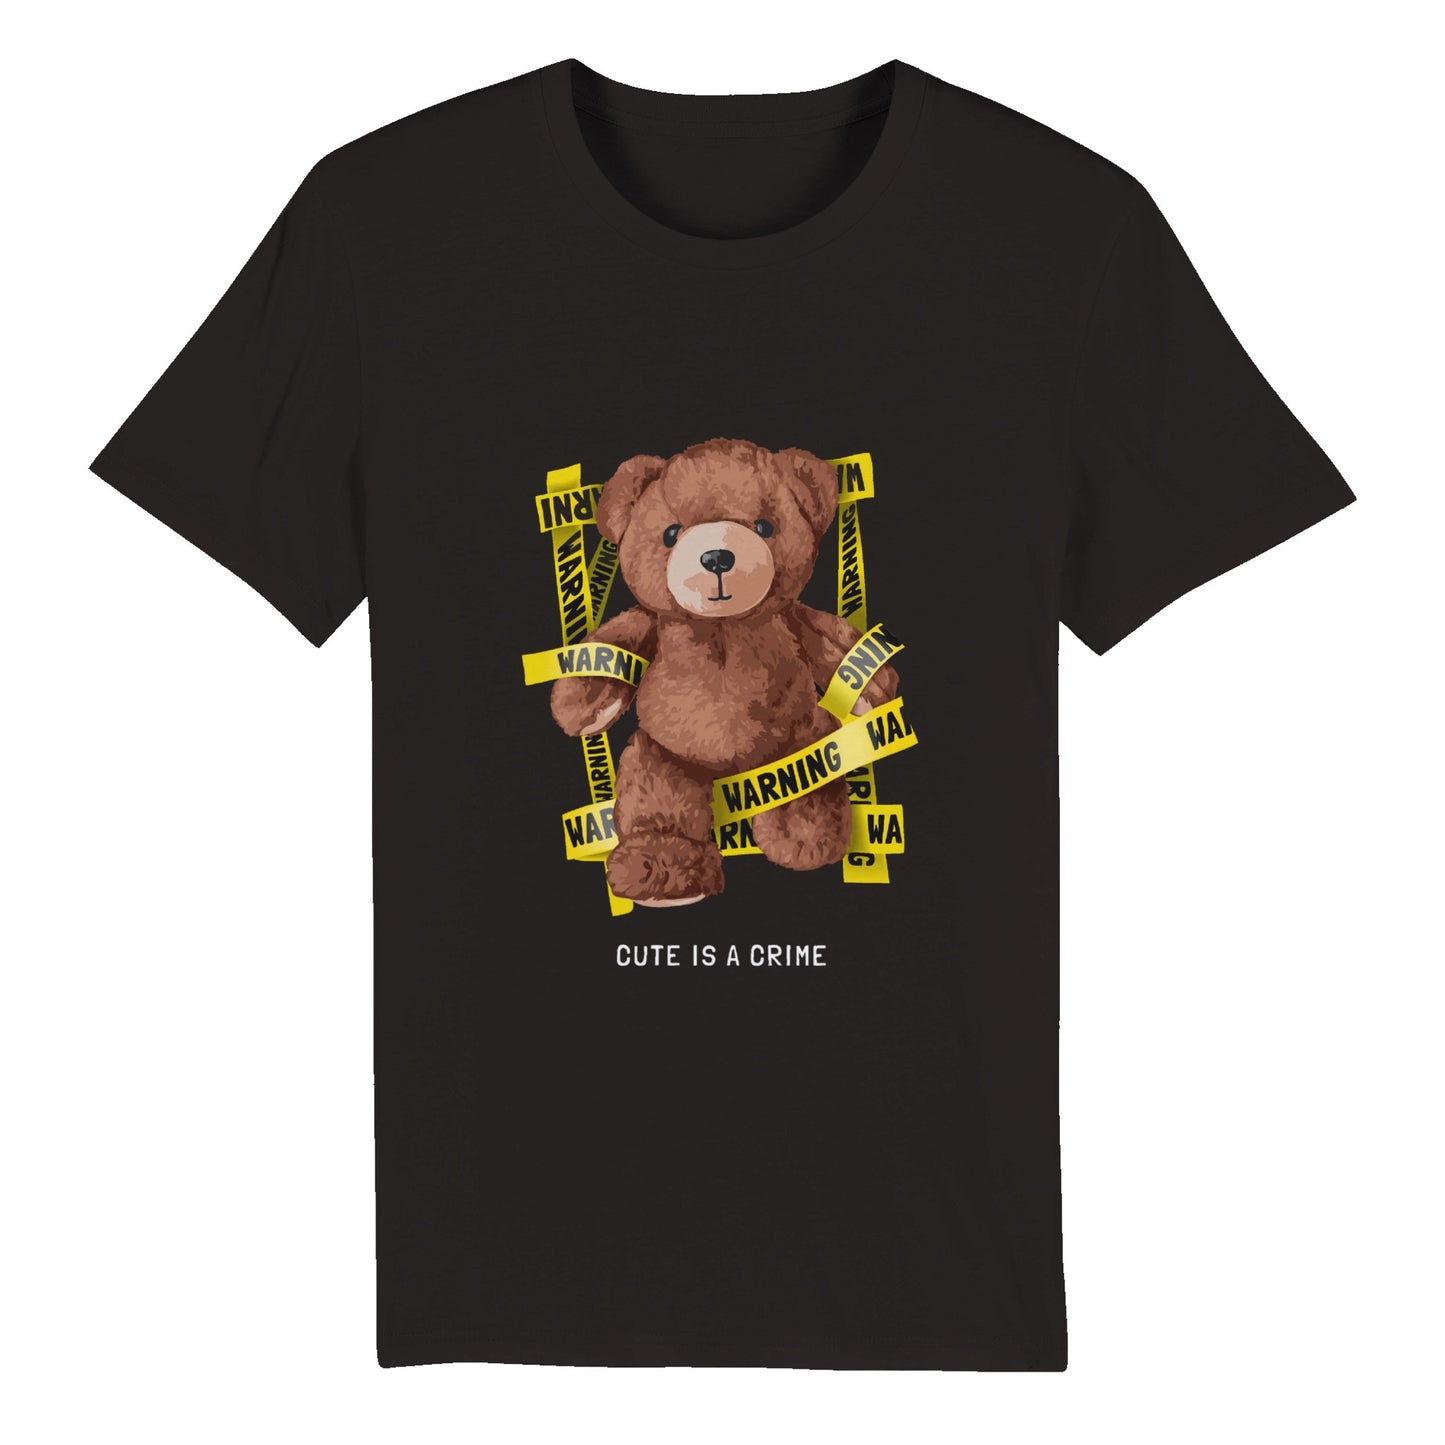 100% Organic Unisex T-shirt/Cute-Is-A-Crime